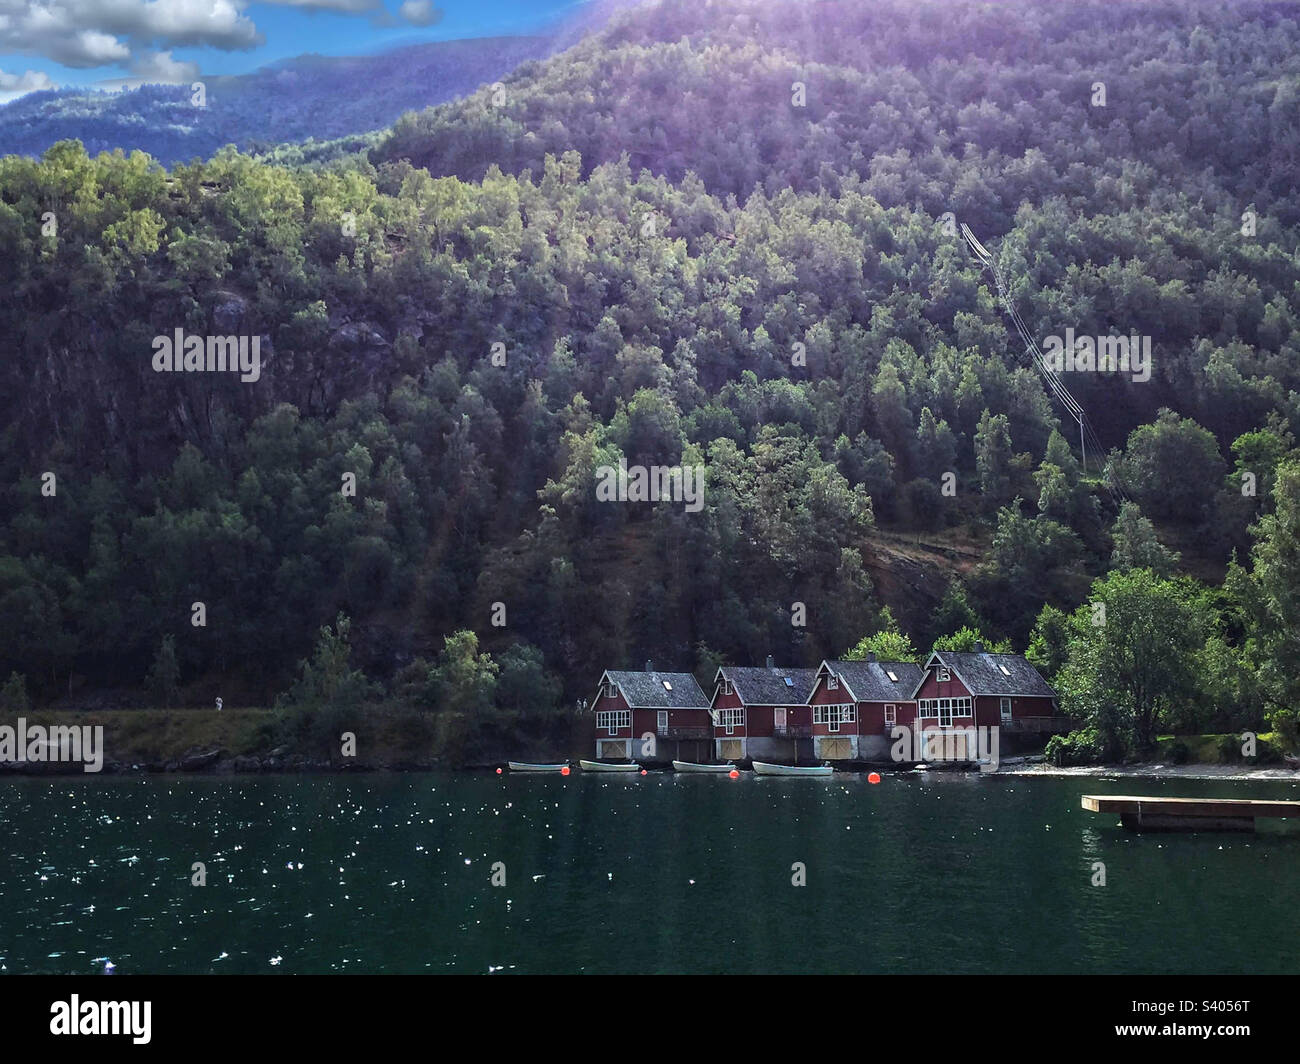 Four cabins on a mountain lake Stock Photo